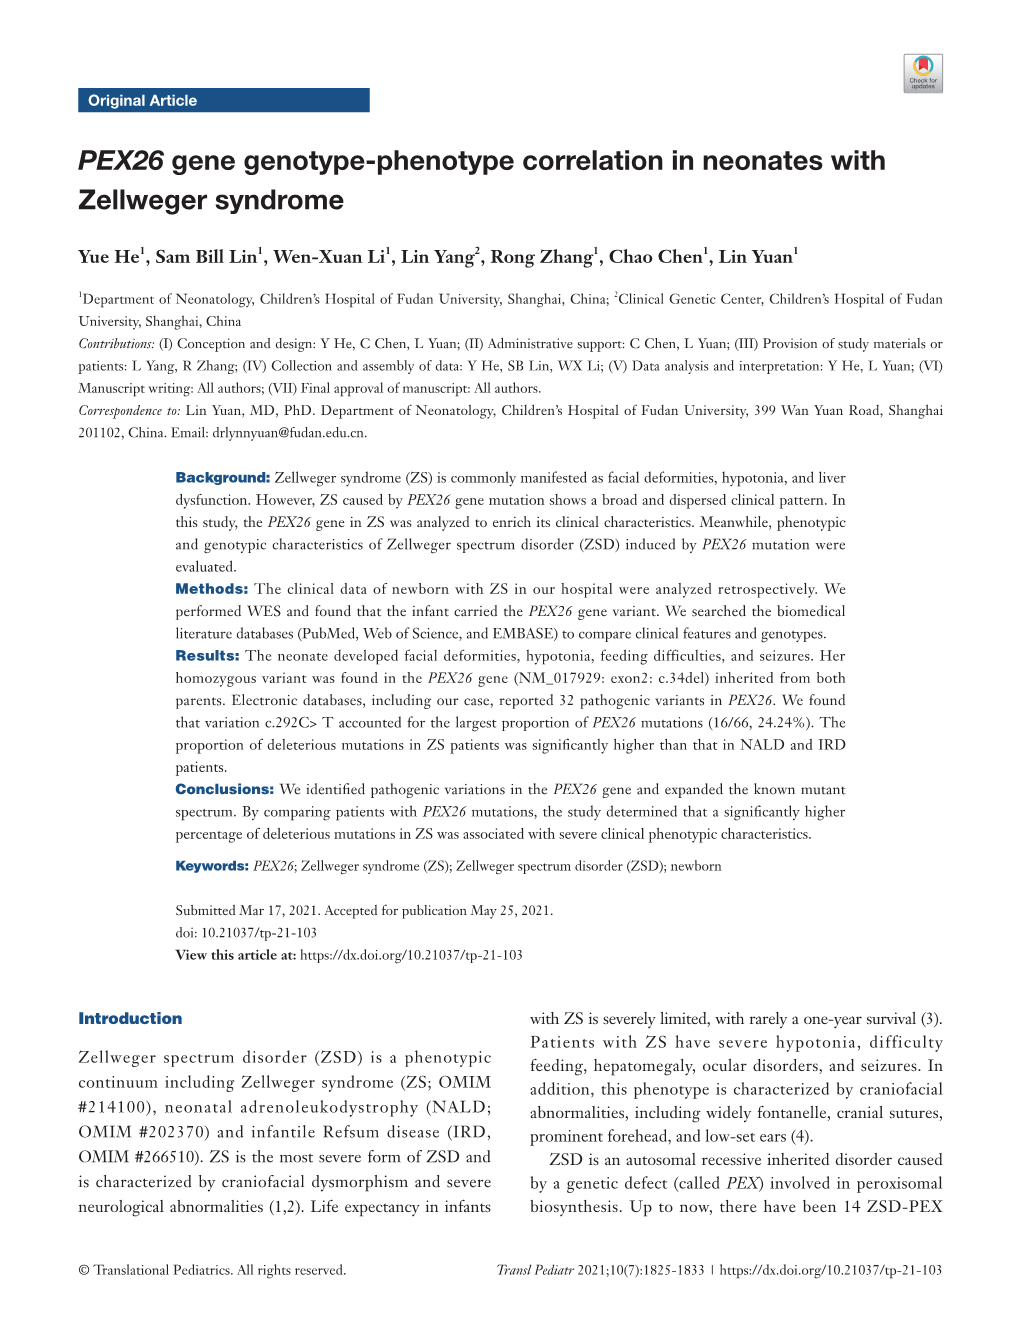 PEX26 Gene Genotype-Phenotype Correlation in Neonates with Zellweger Syndrome